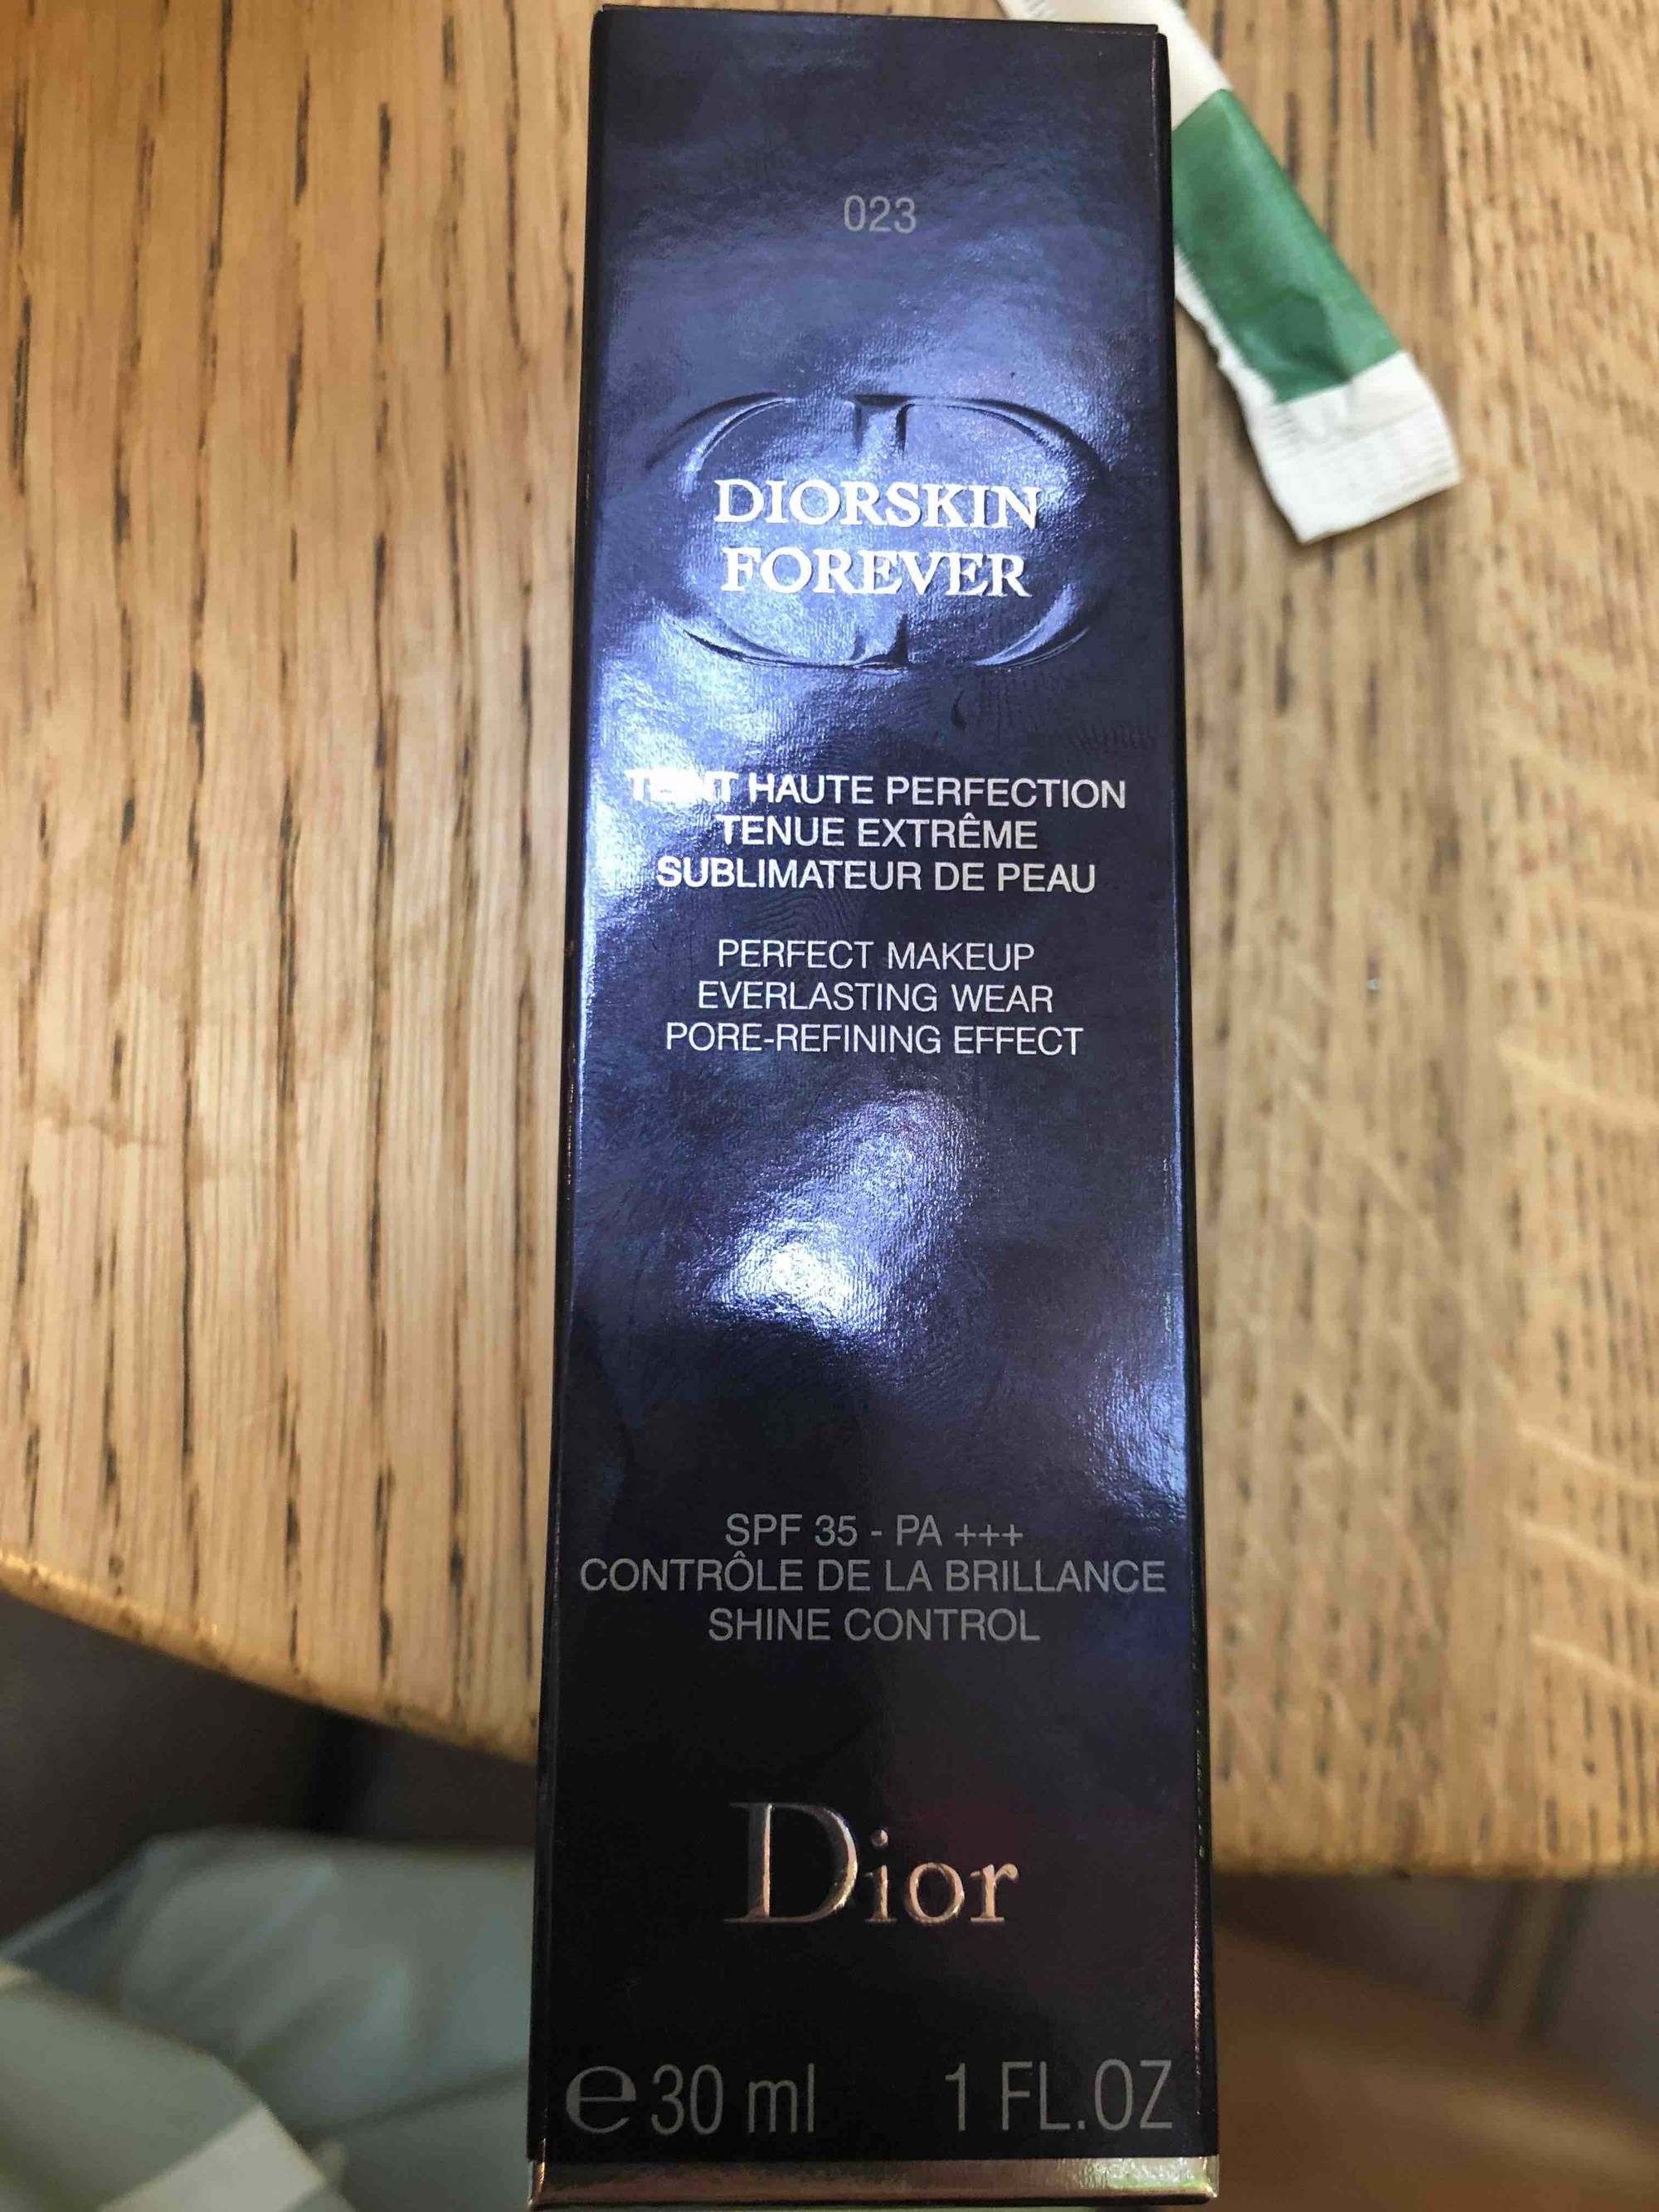 DIOR - Diorskin forever - Teint haute perfction tenue extrême sublimateur de peau SPF 35